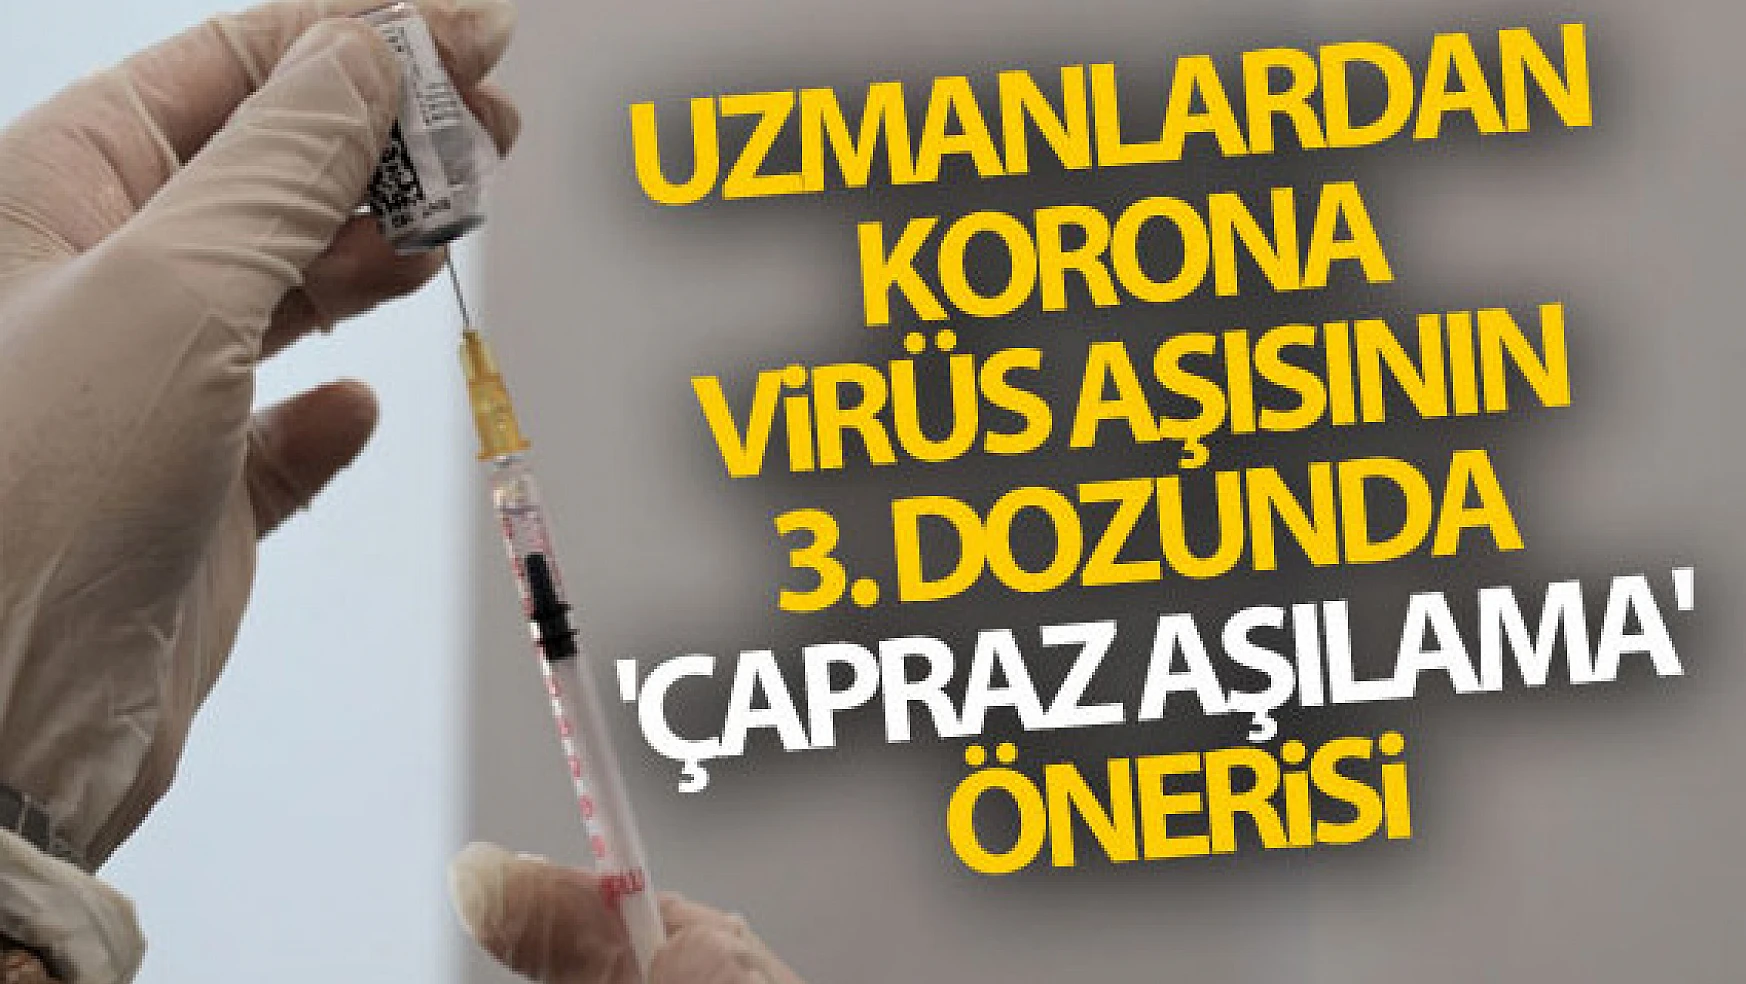 Korona virüs aşısının 3. dozunda 'çapraz aşılama' önerisi